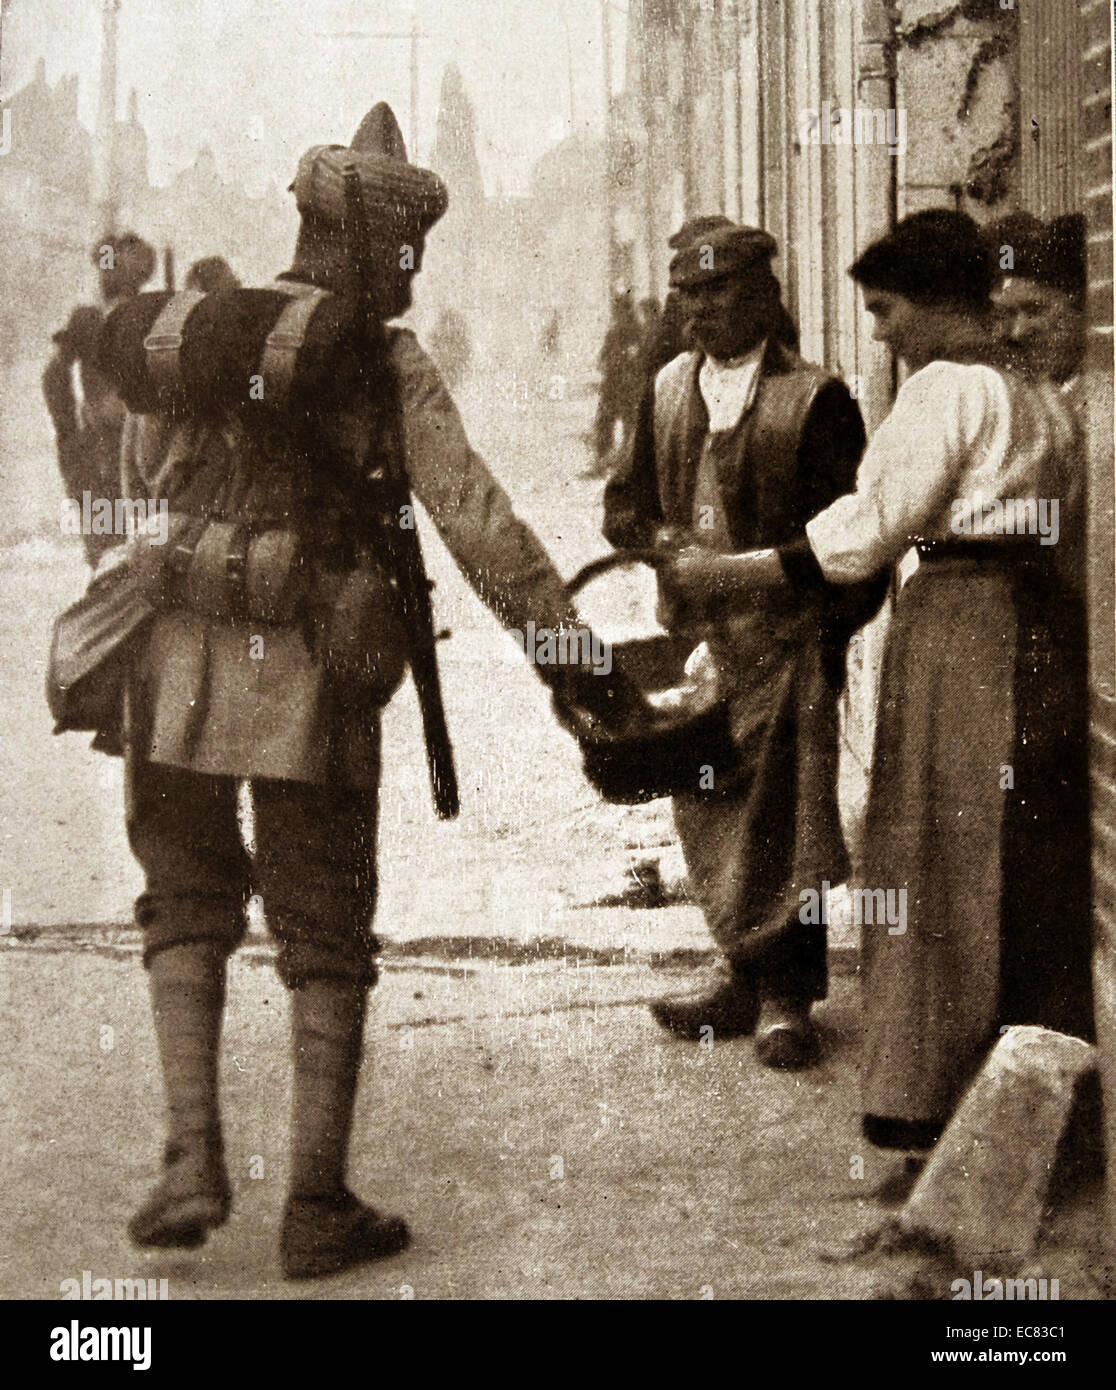 Fotografia di indiani truppe coloniali che arrivano a un caldo benvenuto nelle Fiandre, in Belgio. Datata 1915 Foto Stock